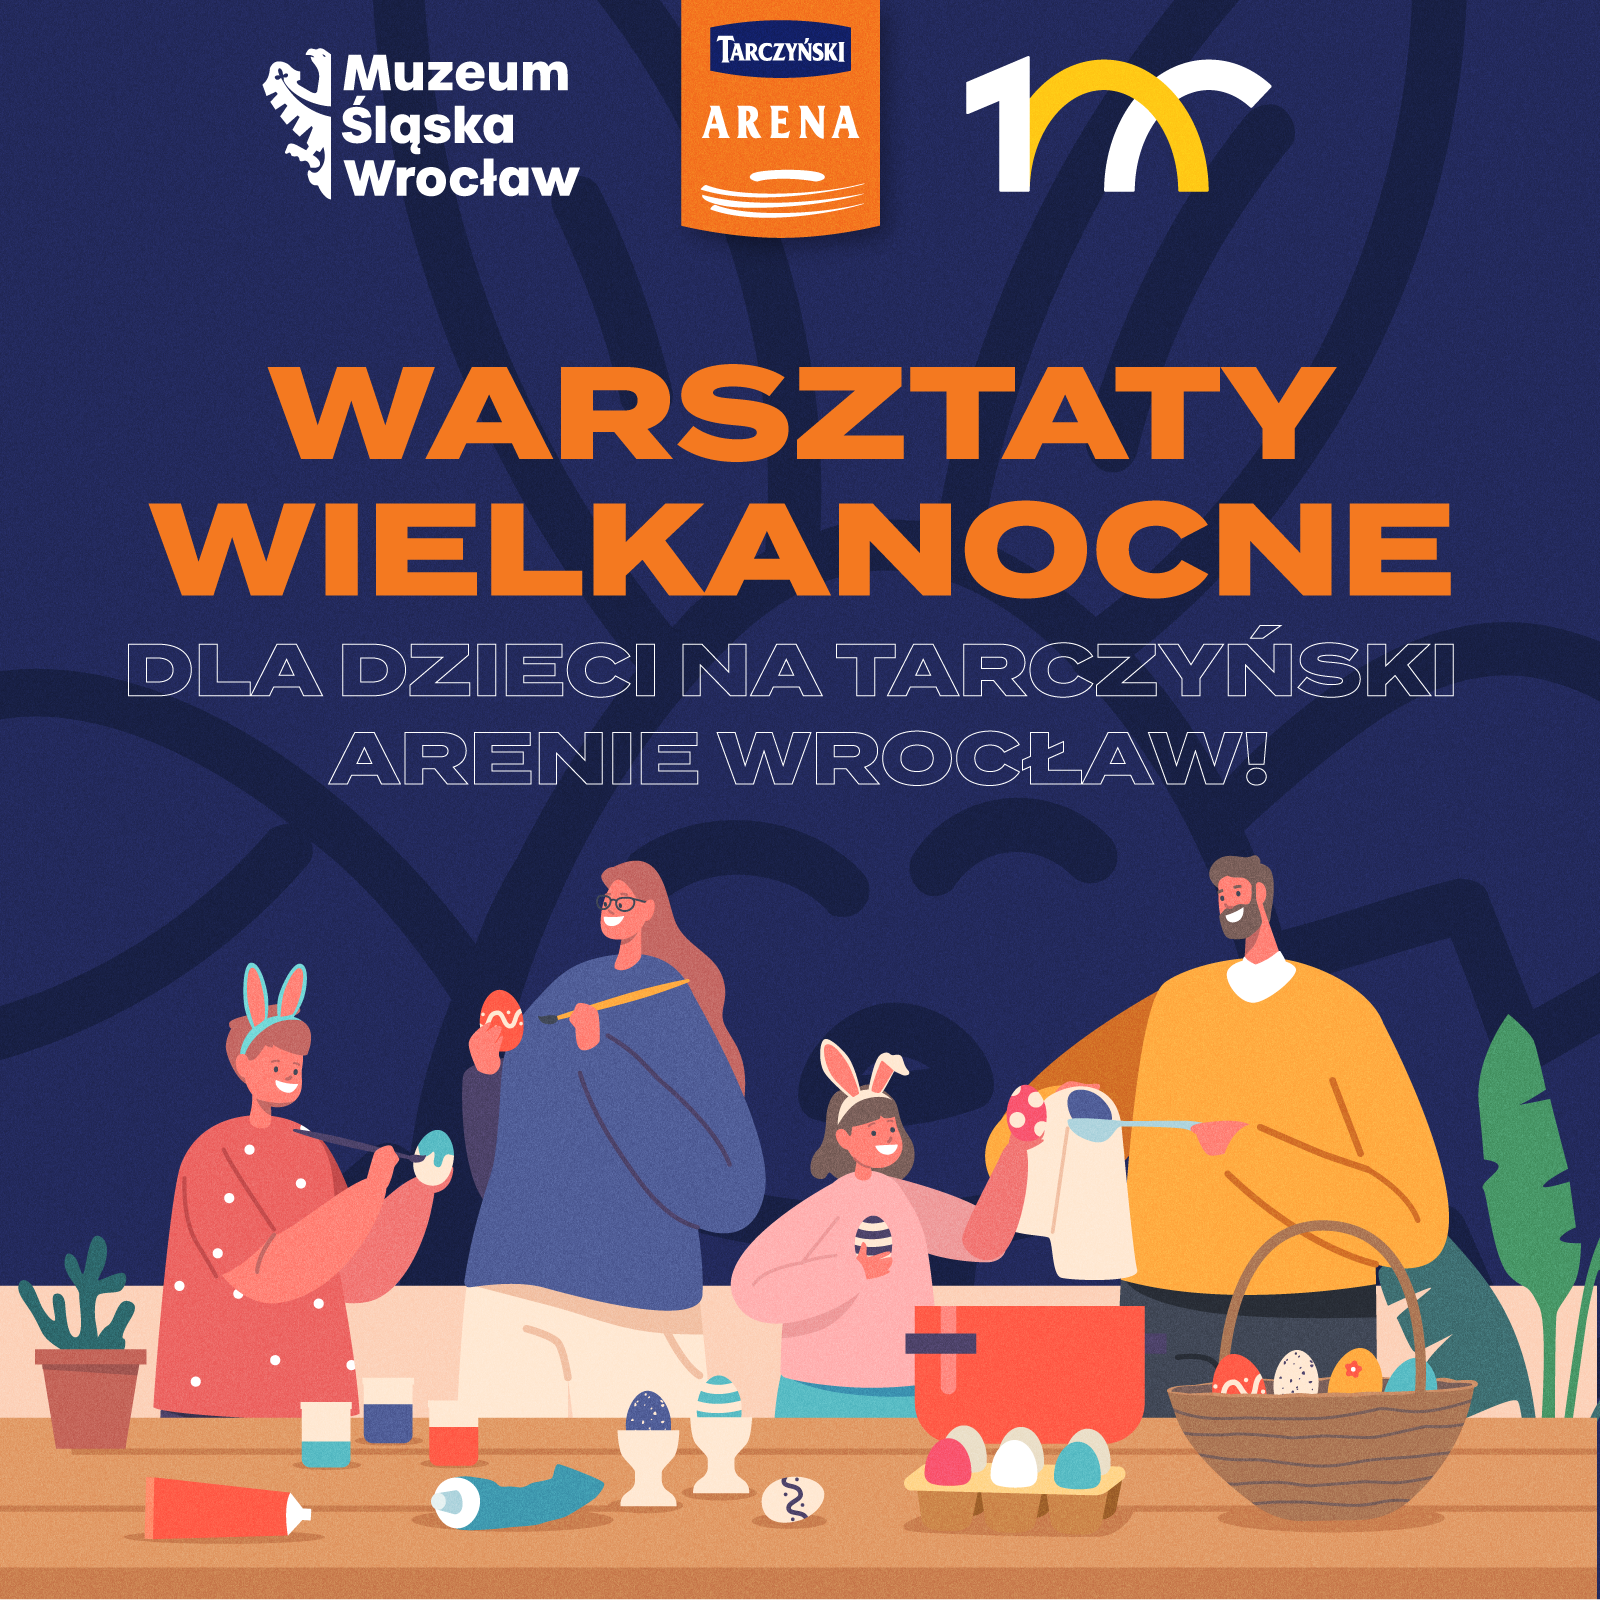 Zapraszamy do Sports Baru oraz Muzeum Śląska Wrocław na 2 godziny wyjątkowej wielkanocnej zabawy.